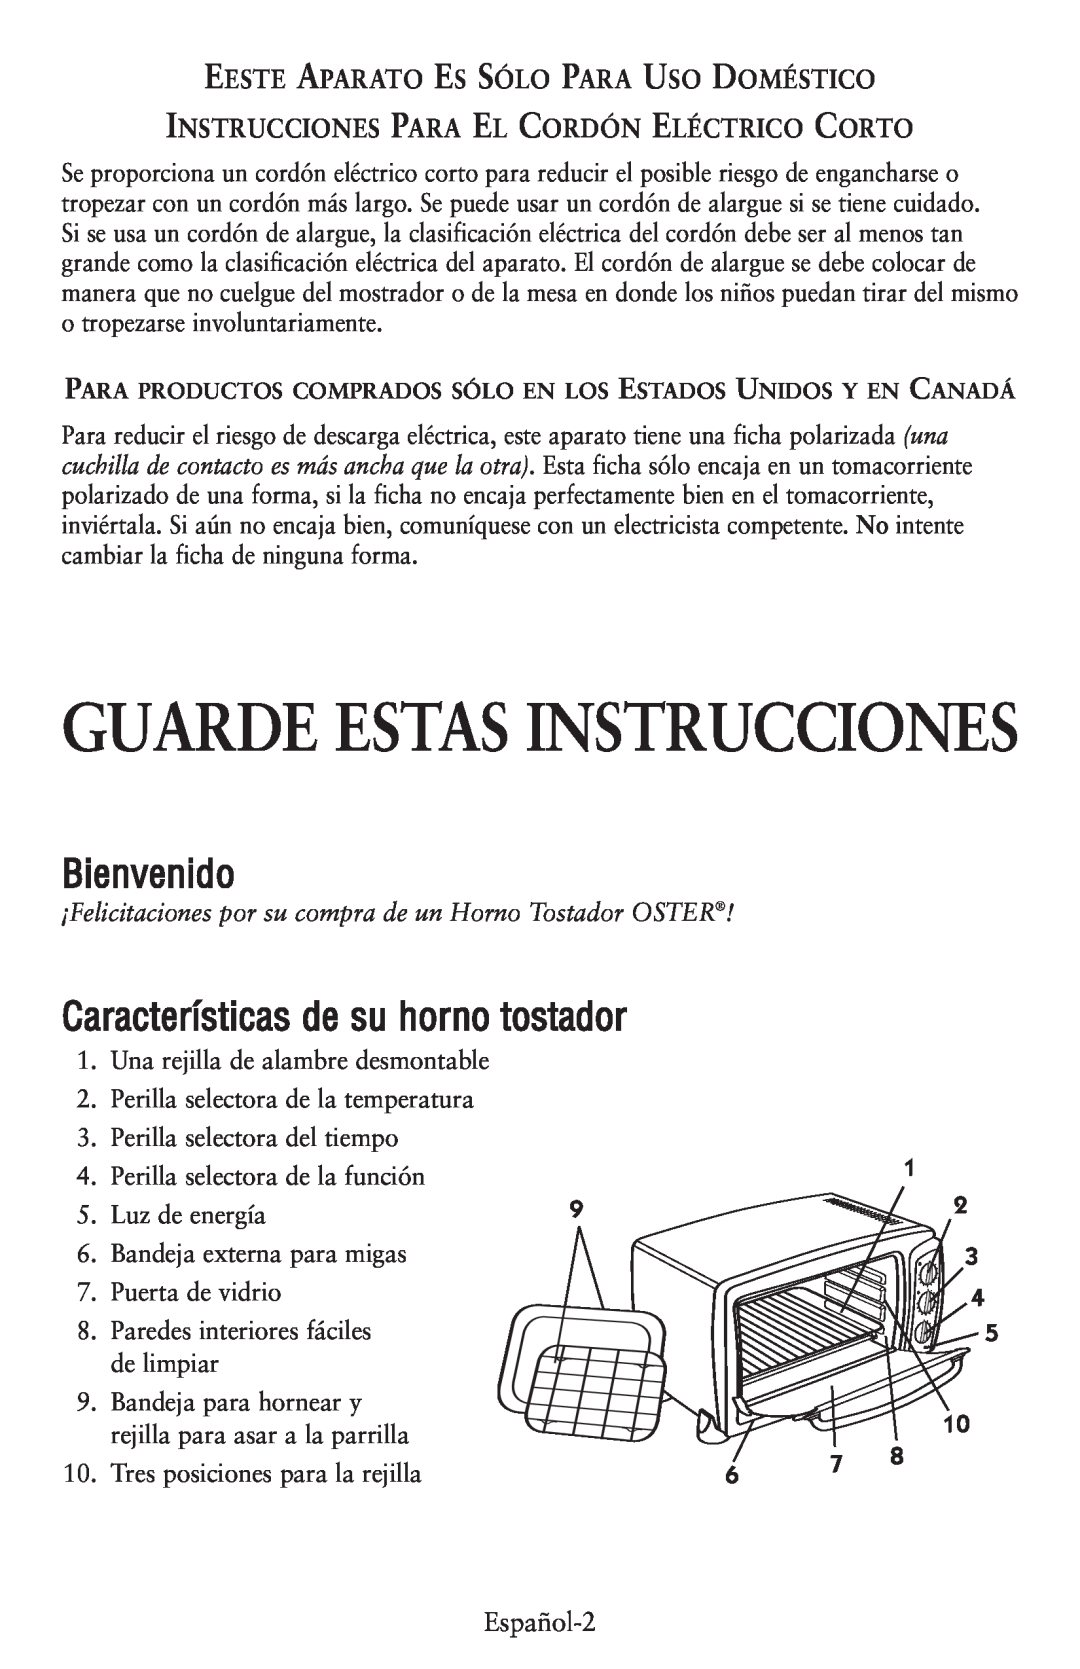 Oster 119308, 6056 user manual Guarde Estas Instrucciones, Bienvenido, Características de su horno tostador 